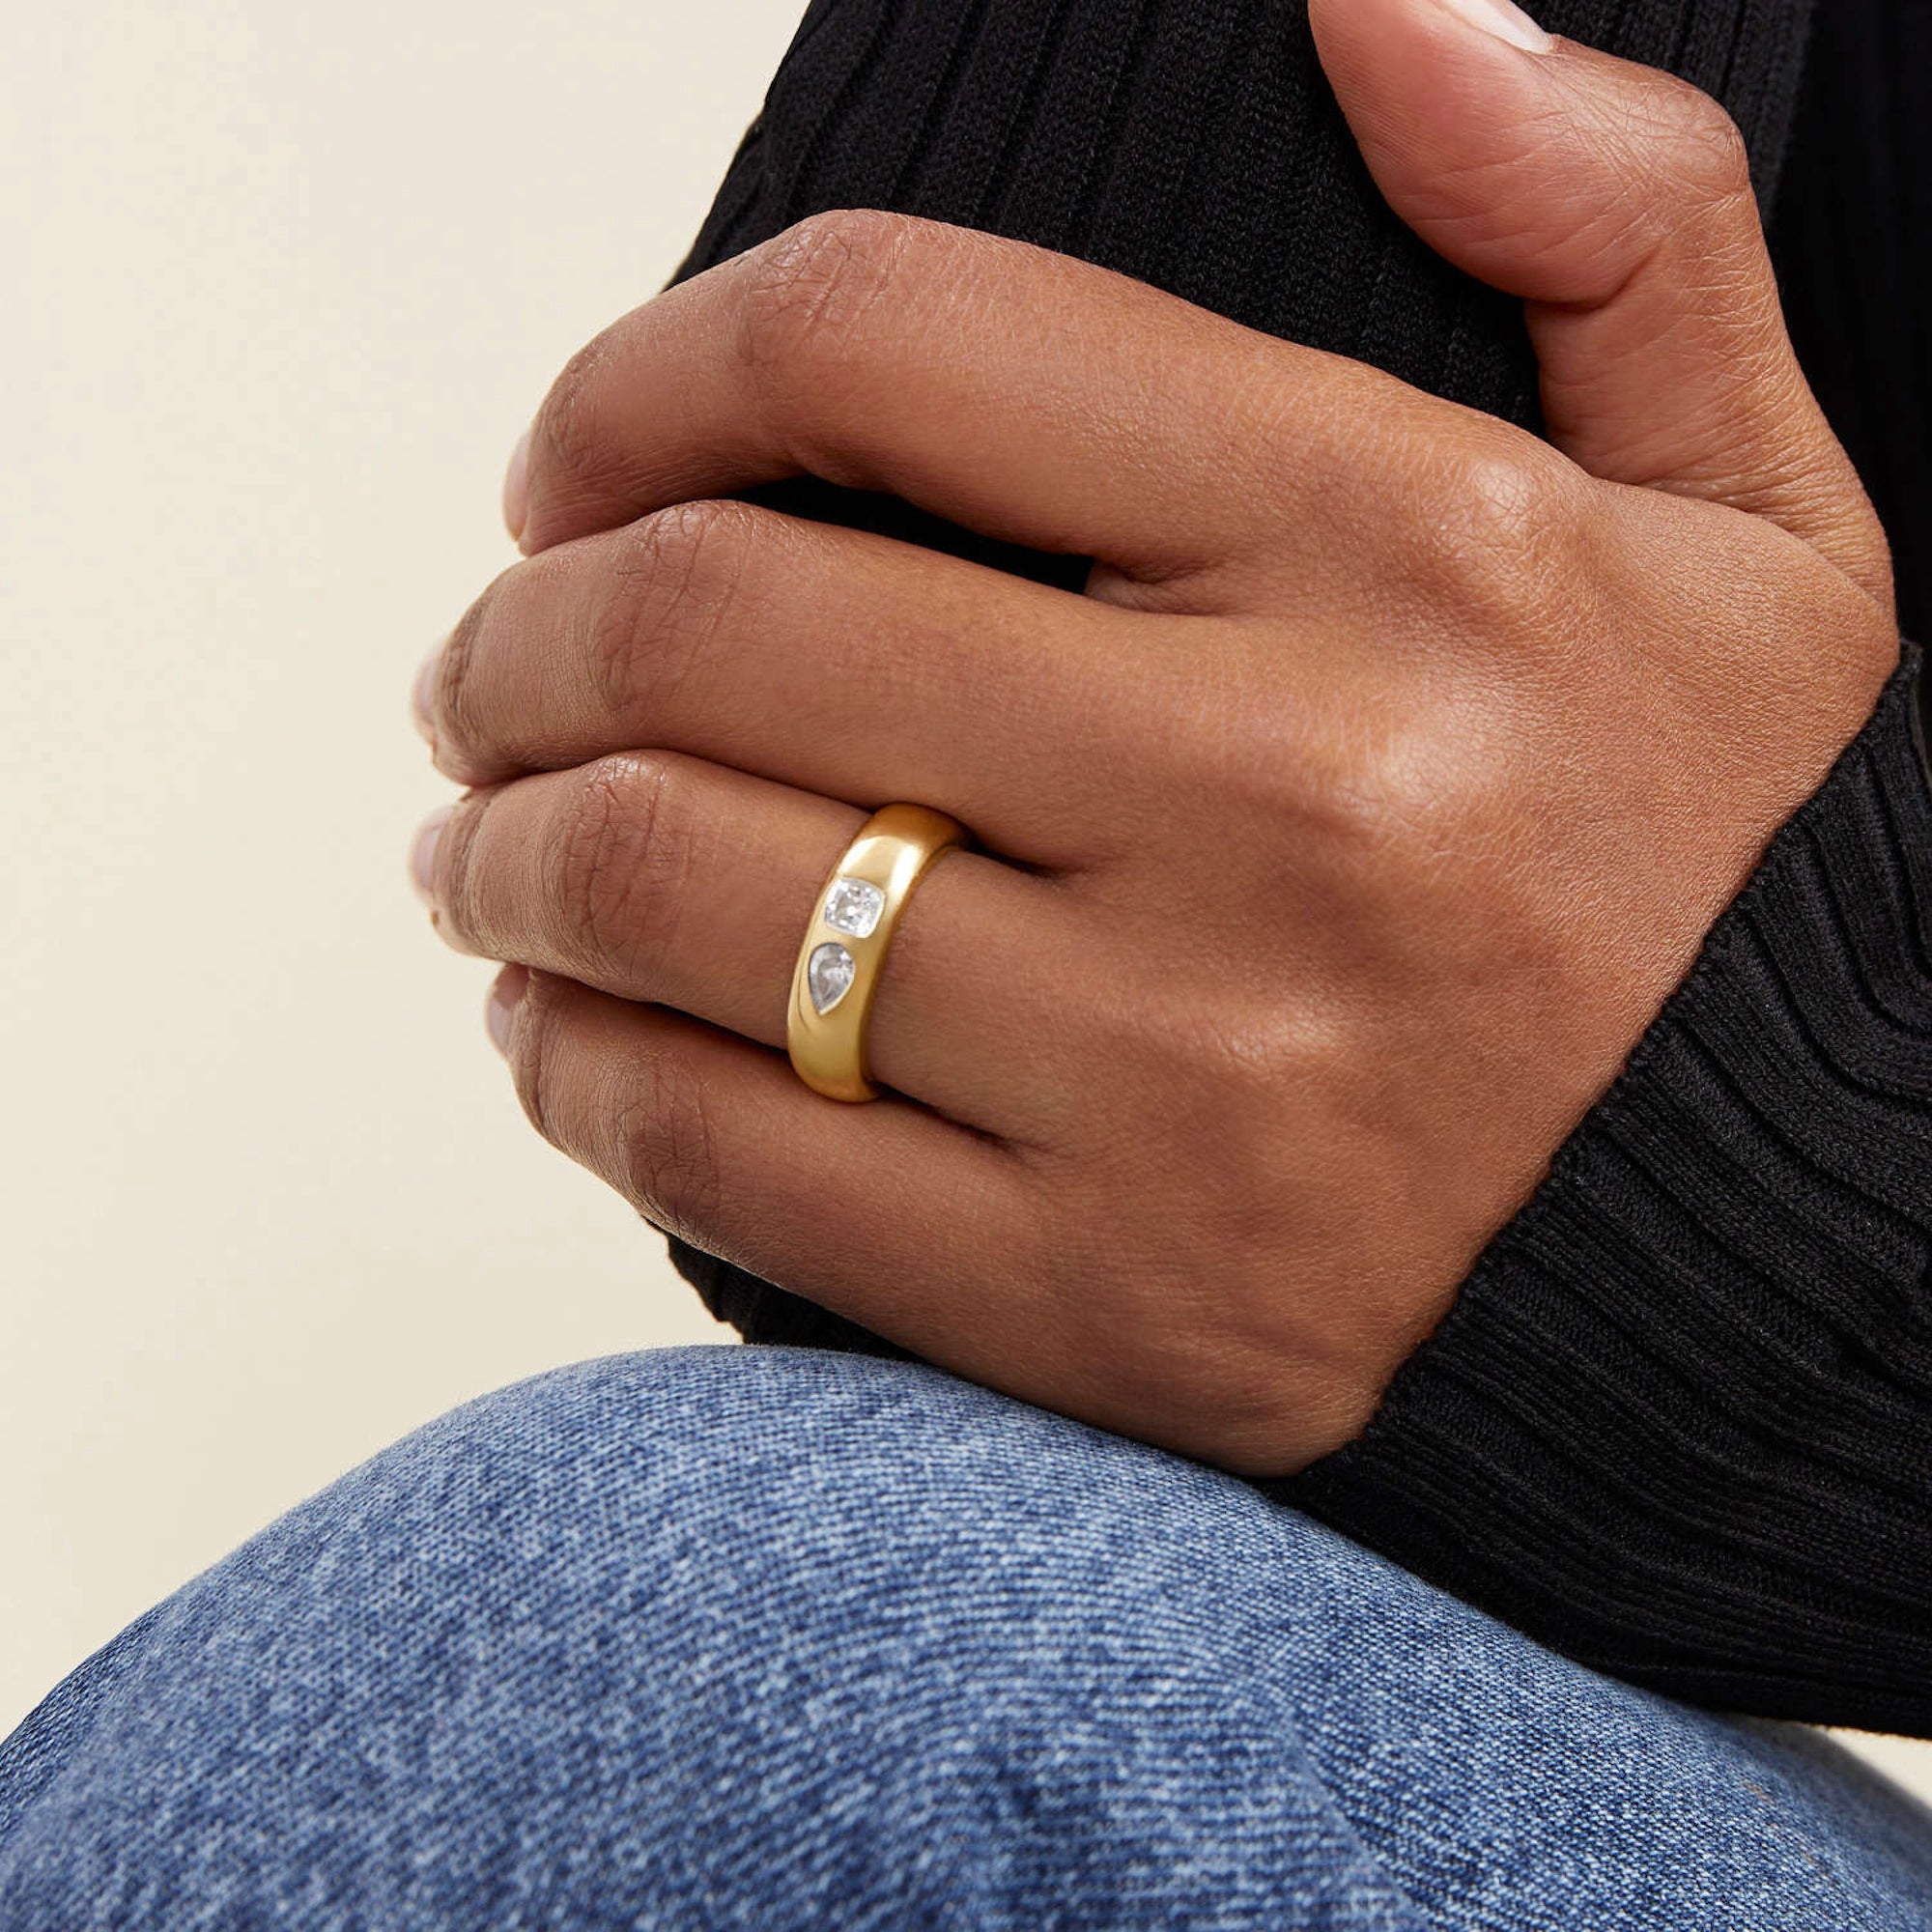 Pin by Savannah Rohloff on Rings | Cute engagement rings, Future engagement  rings, Dream engagement rings